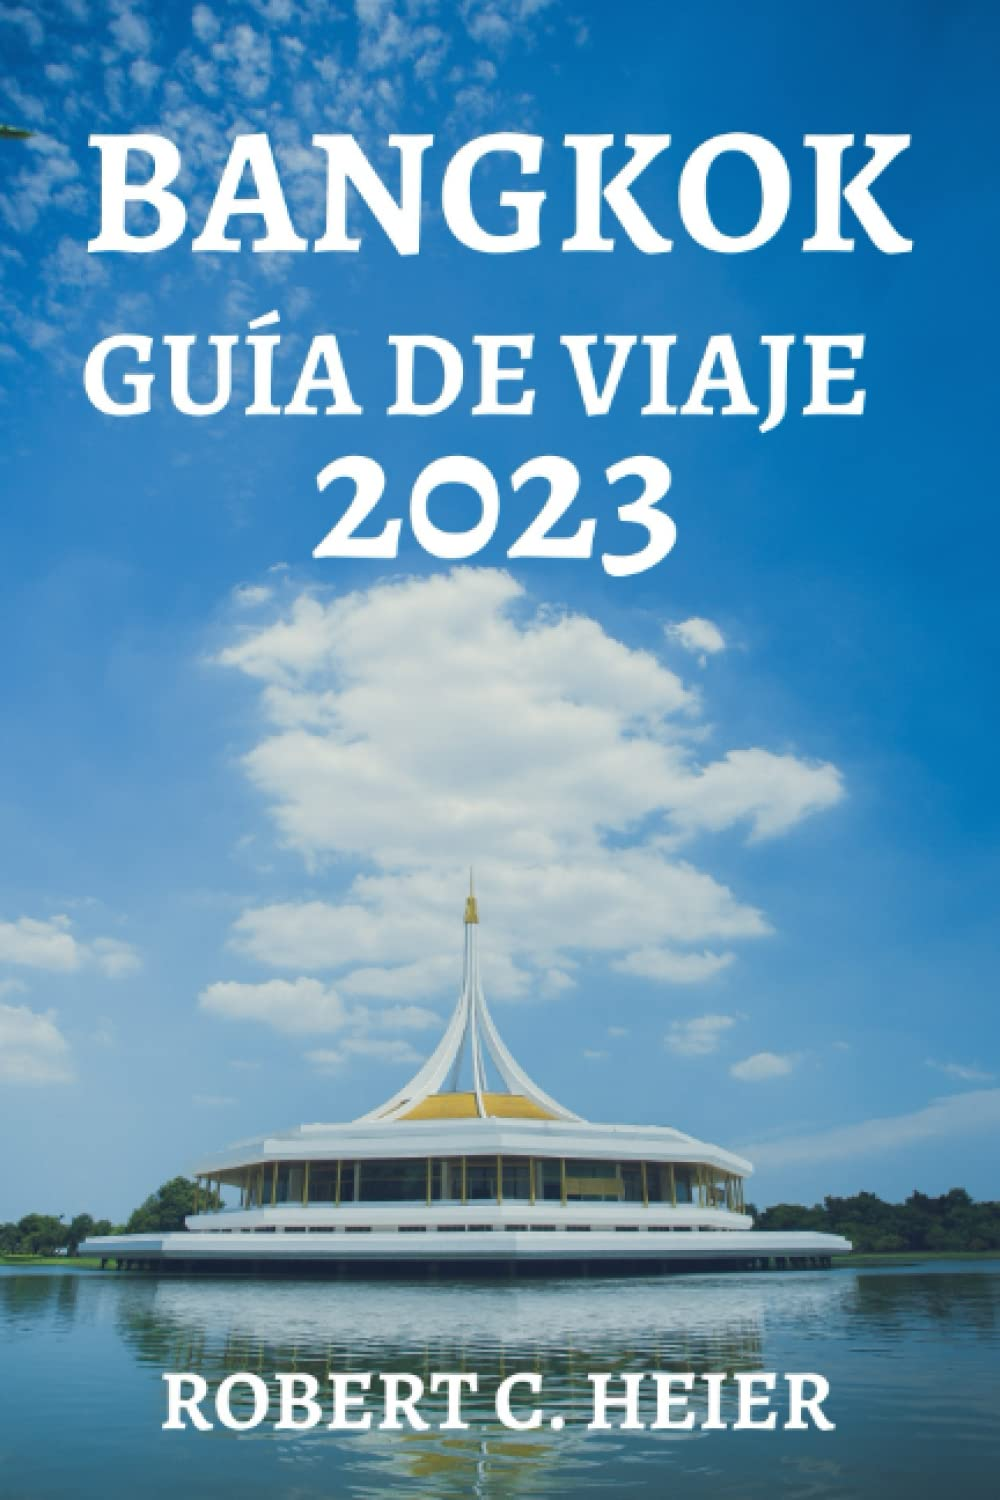 BANGKOK GUÍA DE VIAJE 2023: EL RECURSO DEFINITIVO PARA CUALQUIERA QUE ESTÉ PLANEANDO UN VIAJE A BANGKOK (Spanish Edition)